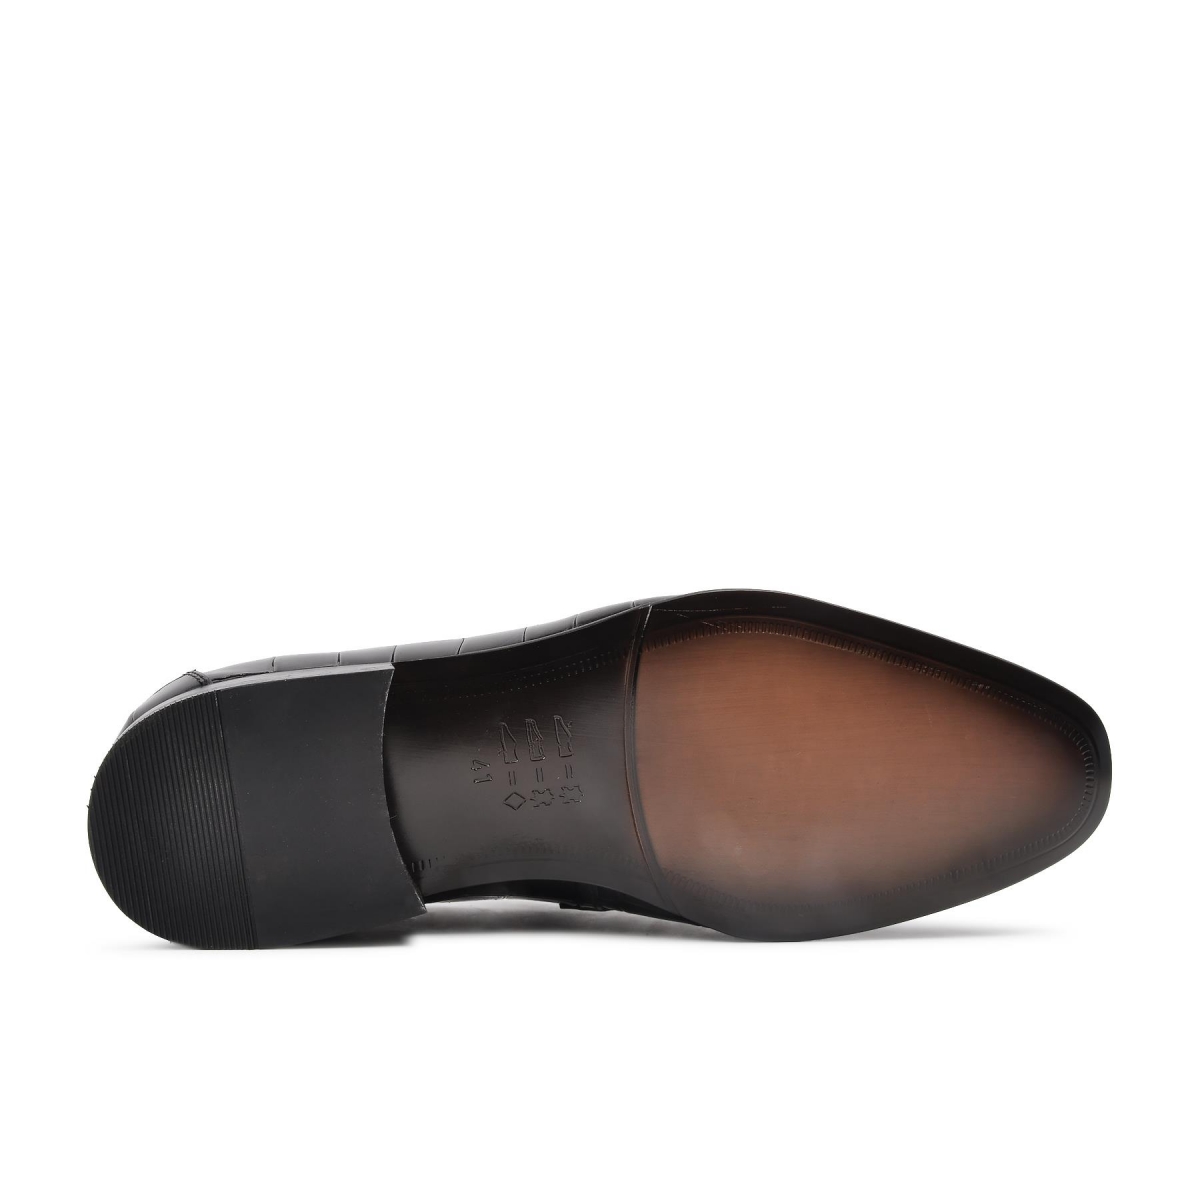 Flo Premium 2302 Siyah Hakiki Deri Erkek Klasik Ayakkabı. 7